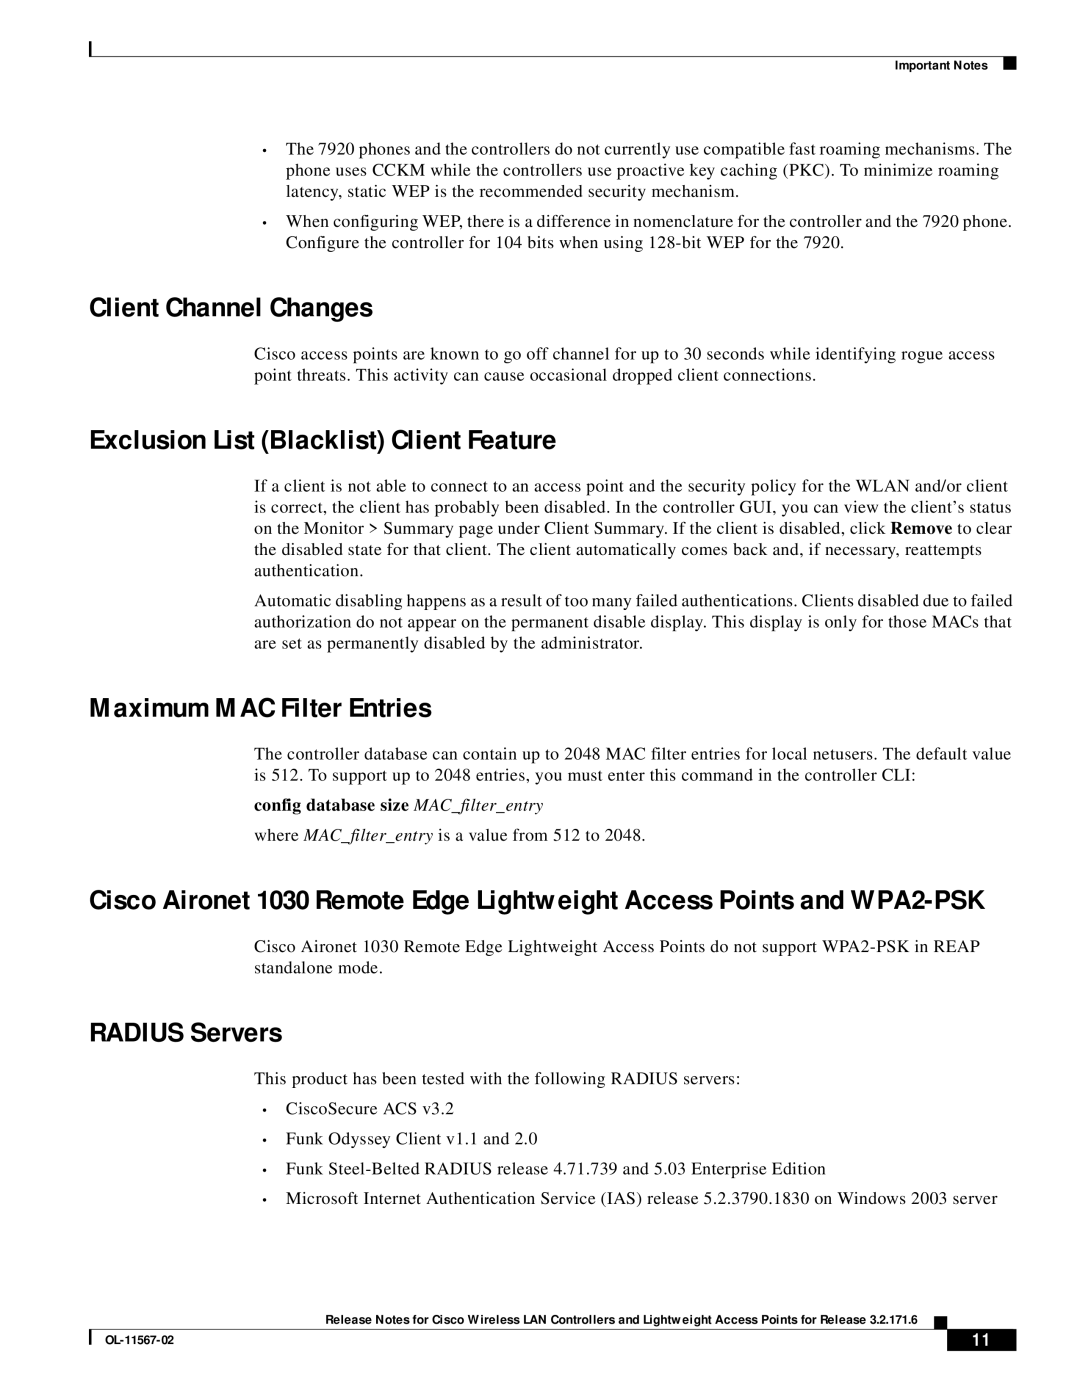 Cisco Systems OL-11567-02 Client Channel Changes, Exclusion List Blacklist Client Feature, Maximum MAC Filter Entries 